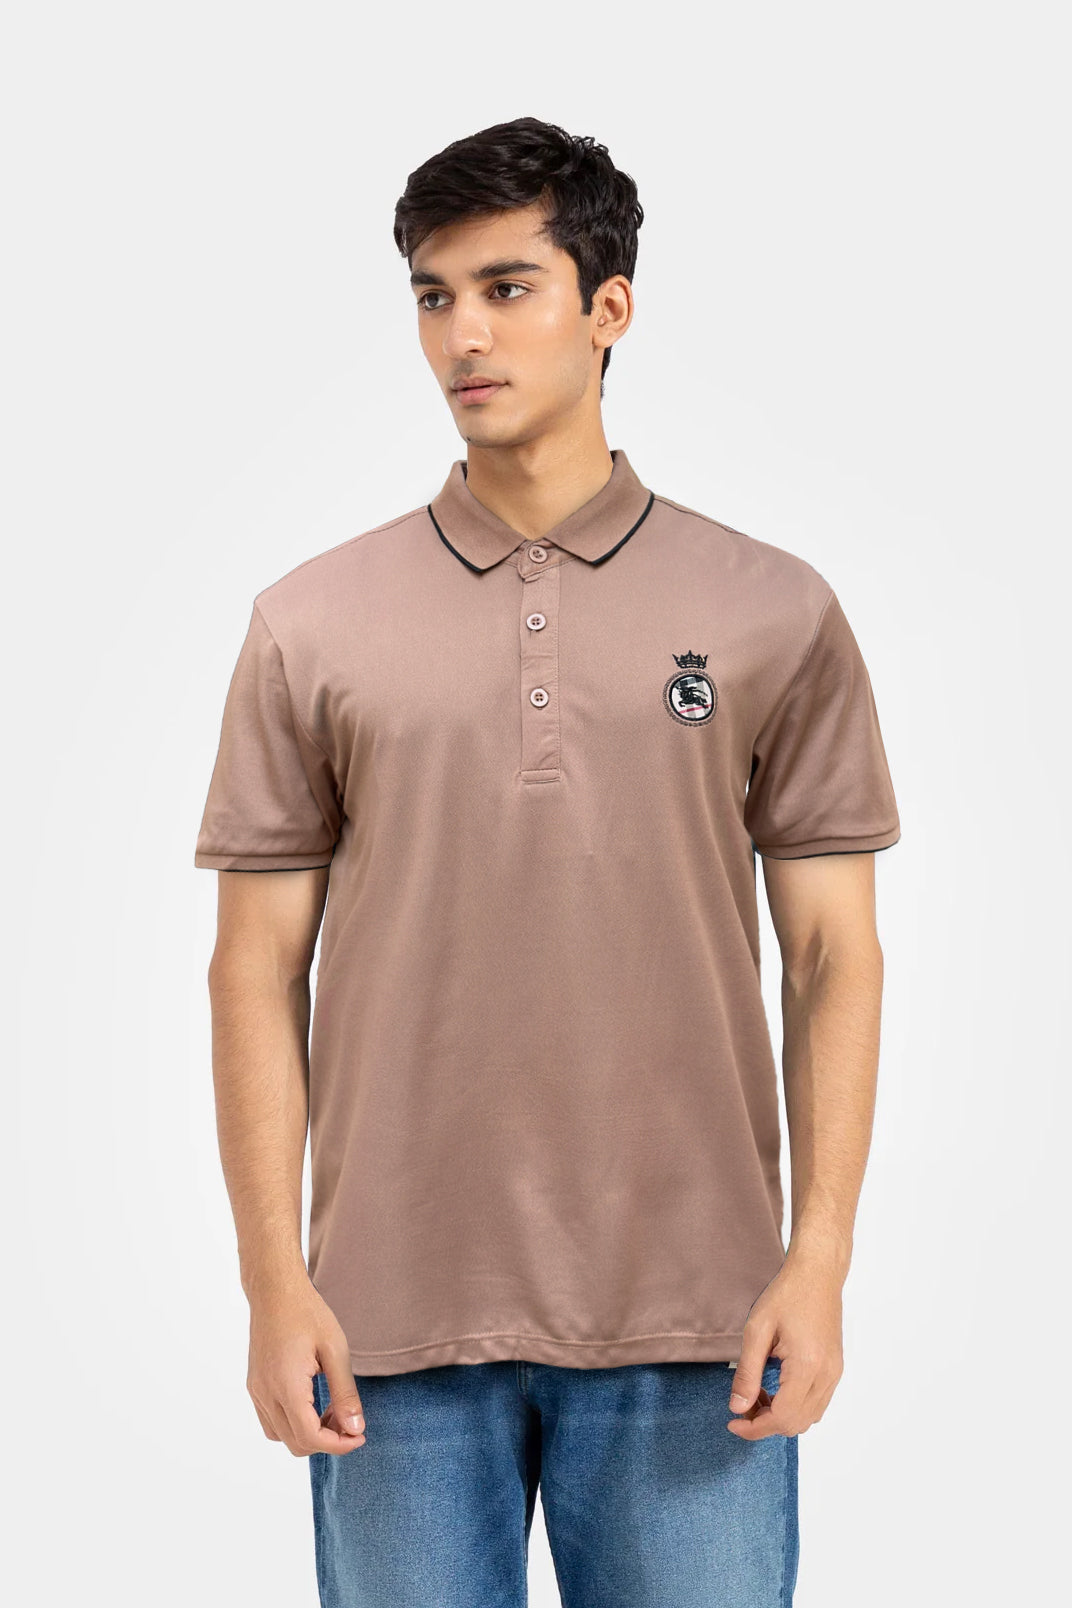 Emblem Polo Shirt - 0124004